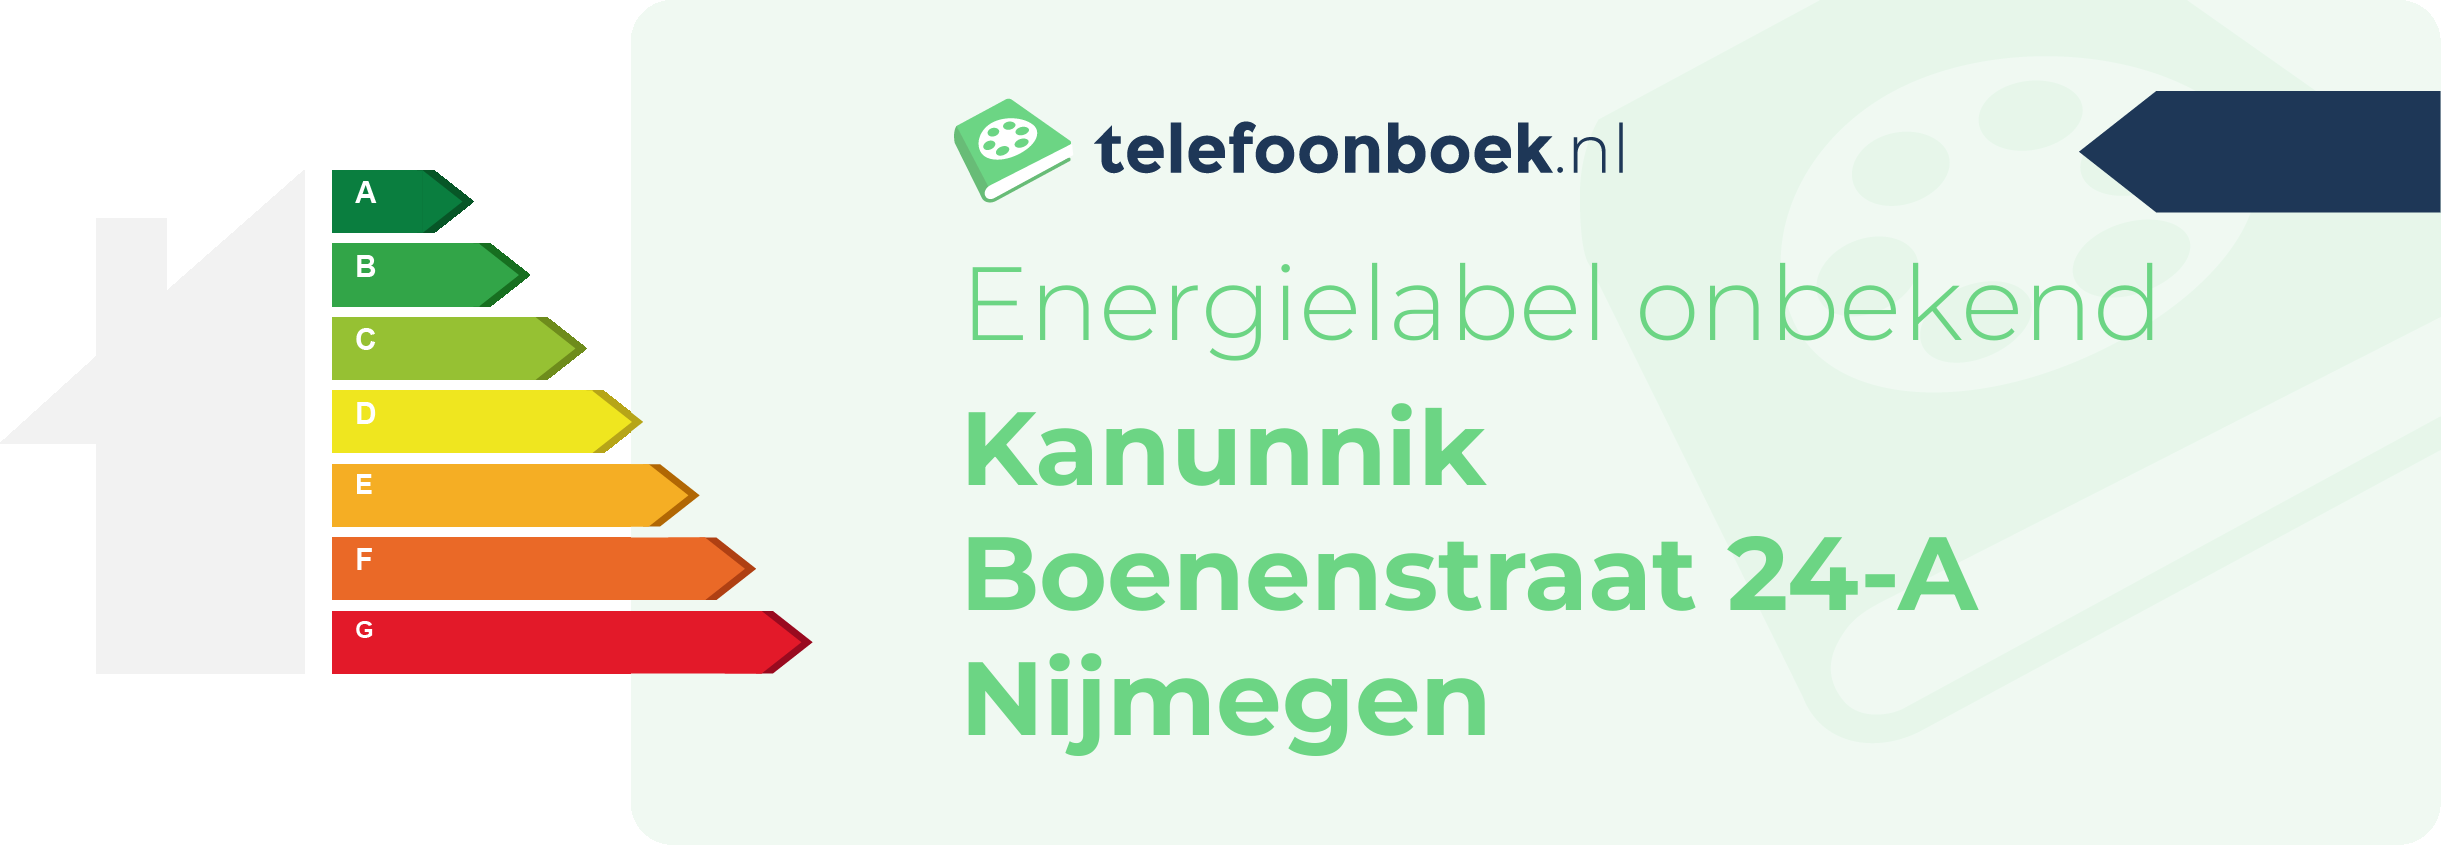 Energielabel Kanunnik Boenenstraat 24-A Nijmegen